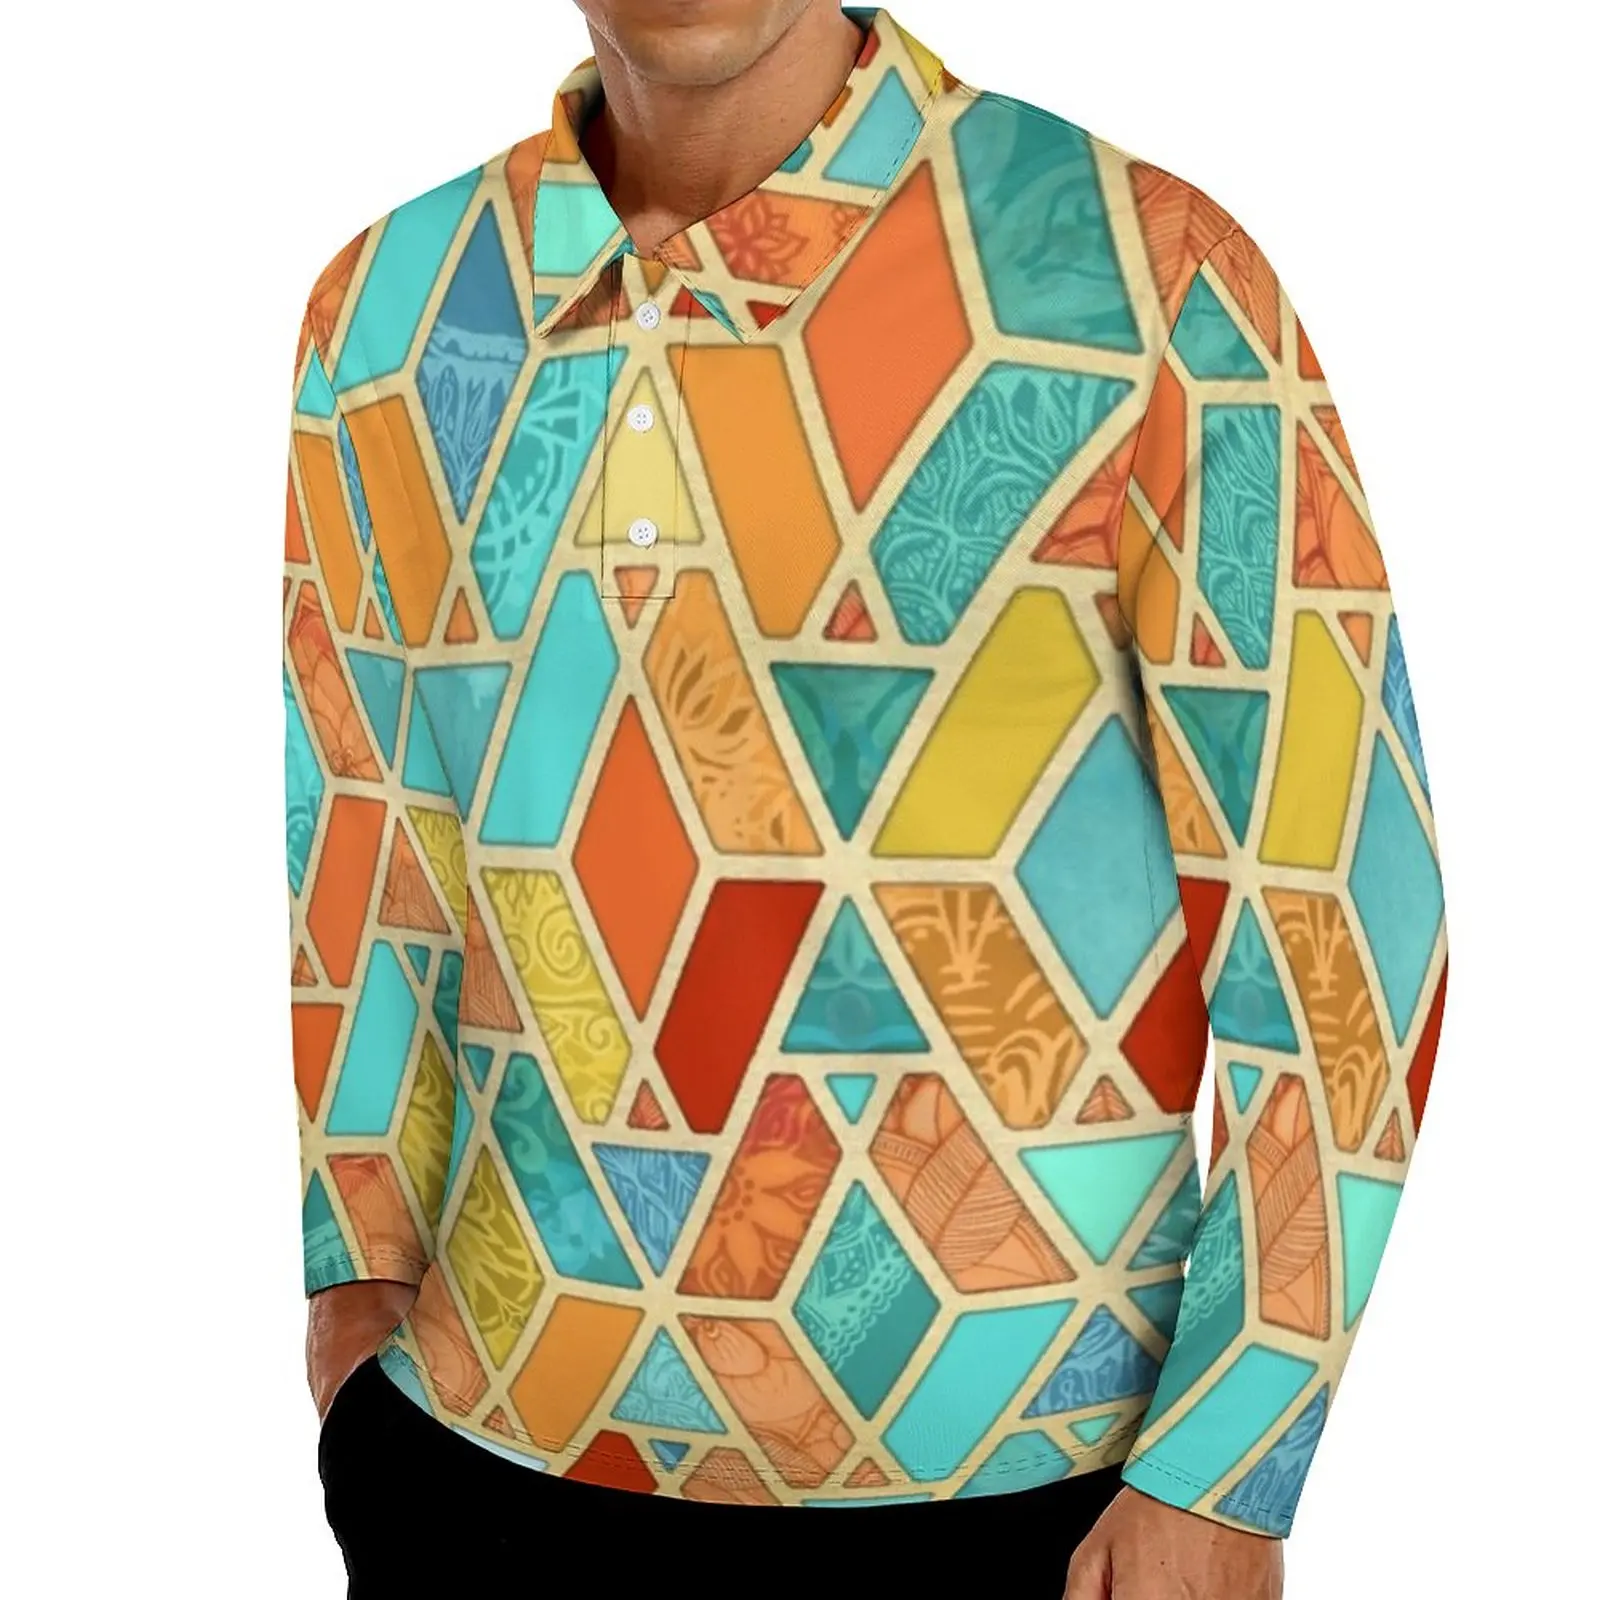 

Повседневная мужская рубашка с абстрактным стильным геометрическим принтом, Весенняя ретро-рубашка с воротником и длинным рукавом, дизайн...